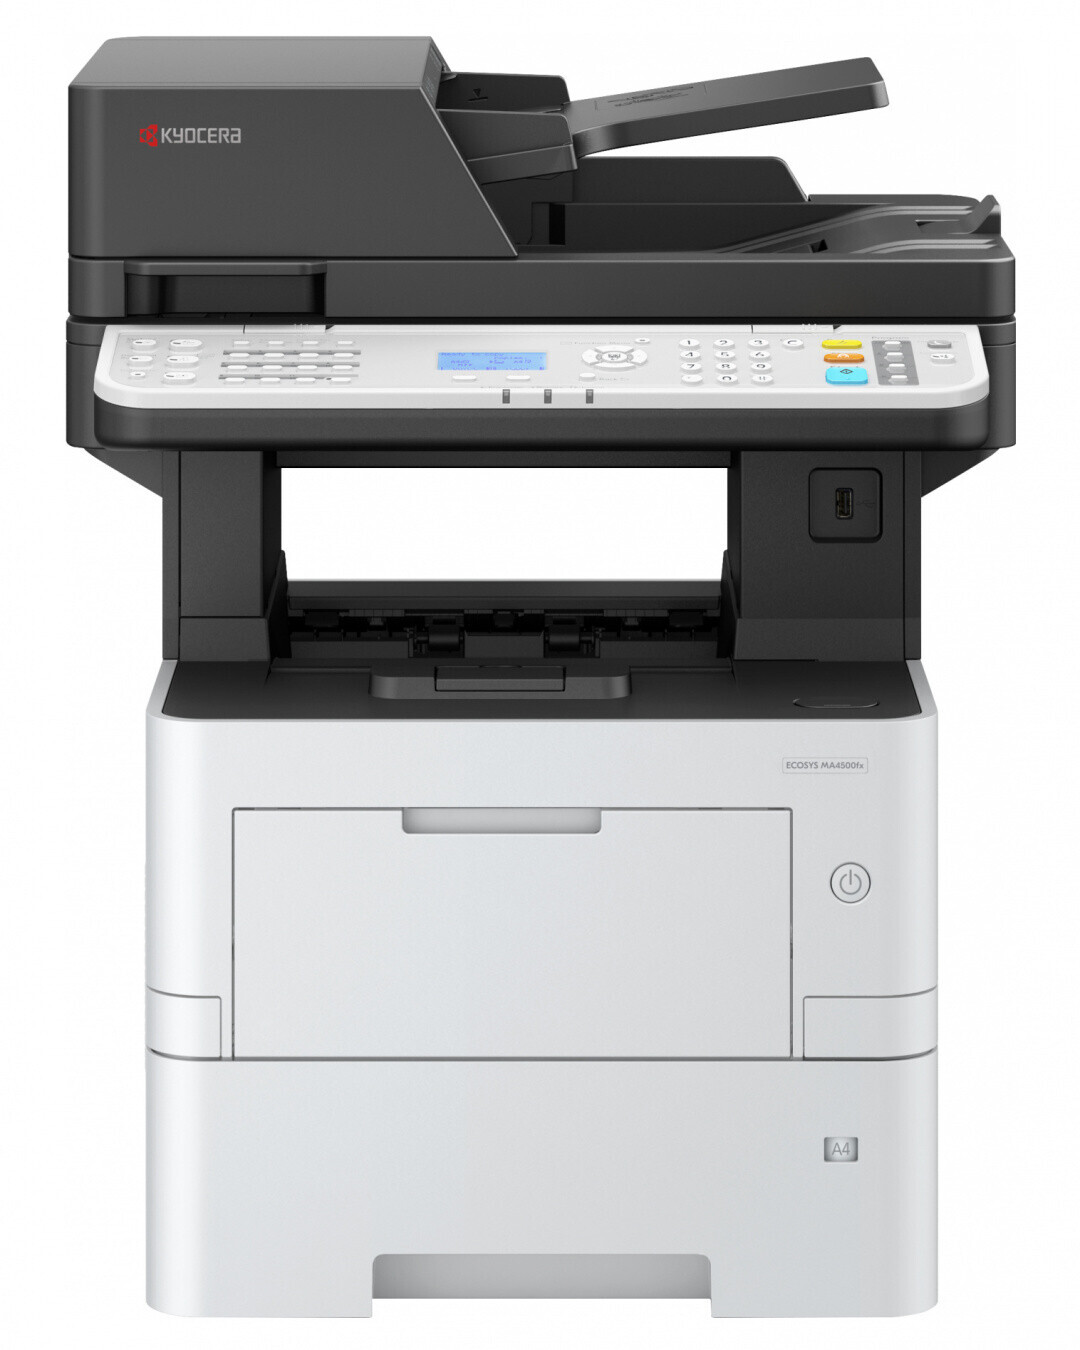 Vorschau: Kyocera ECOSYS MA4500ifx SW 4-in-1-Laserdrucker